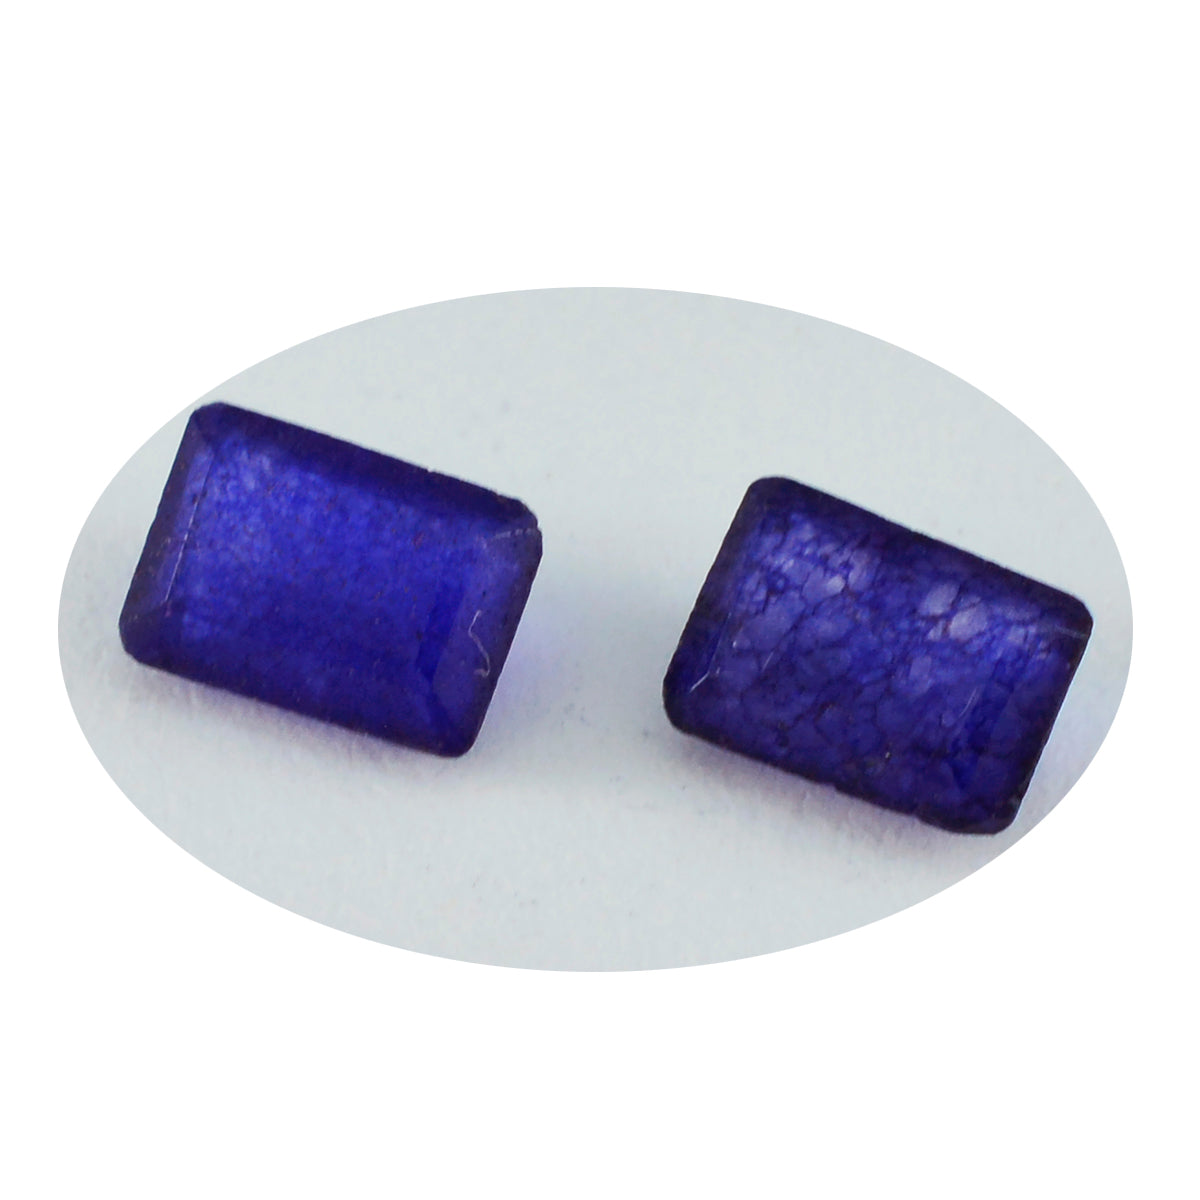 Riyogems 1 Stück echter blauer Jaspis, facettiert, 6 x 8 mm, achteckige Form, gut aussehender, hochwertiger, loser Edelstein